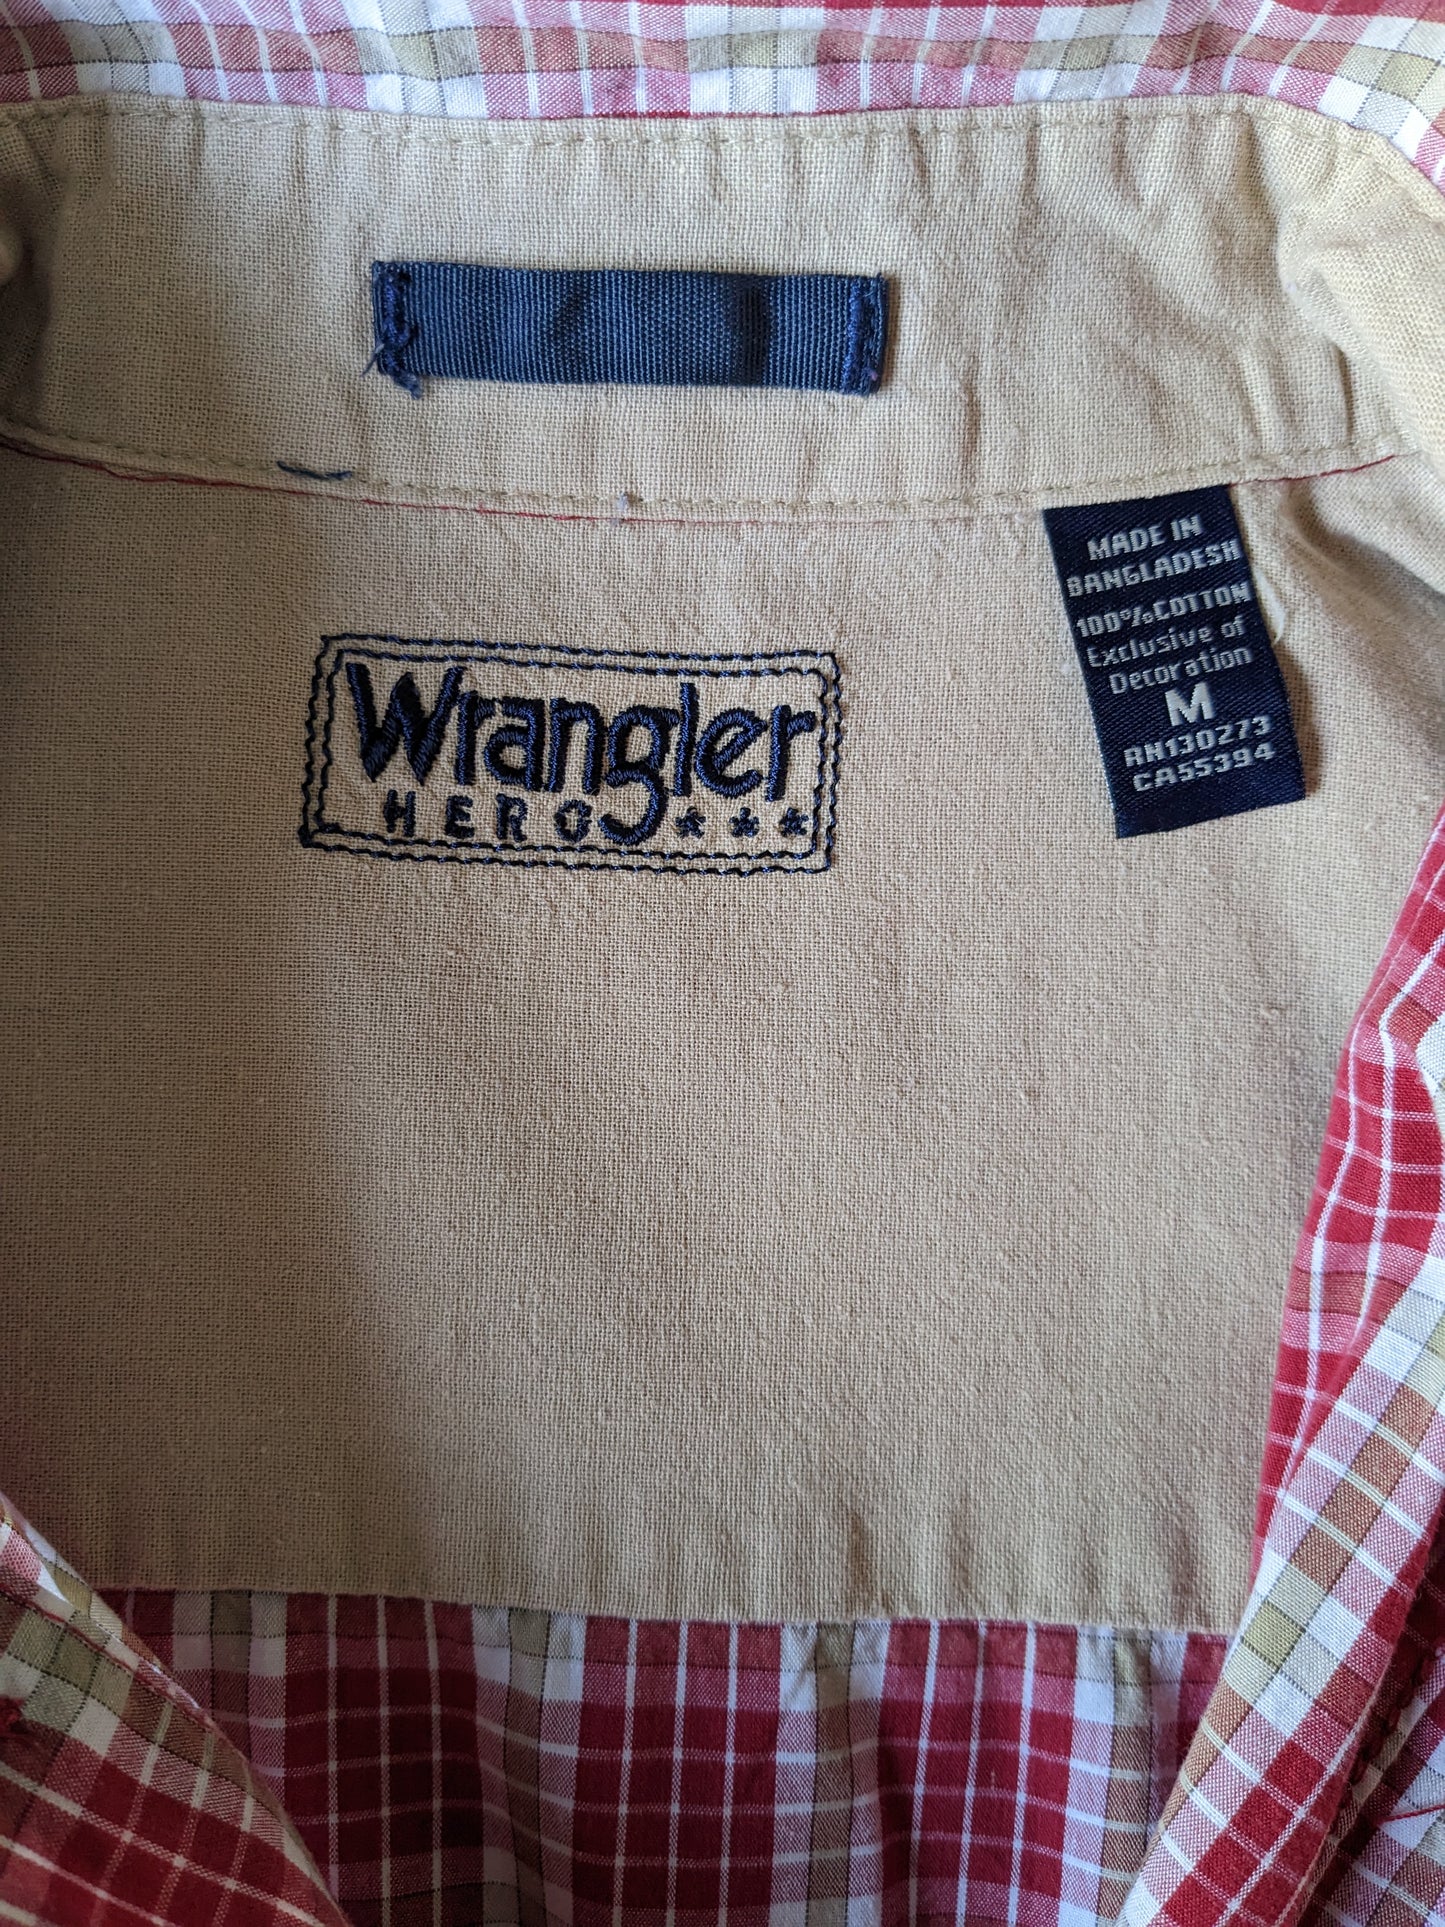 Wrangler shirt short sleeve. Red beige white checkered. Size M / L.